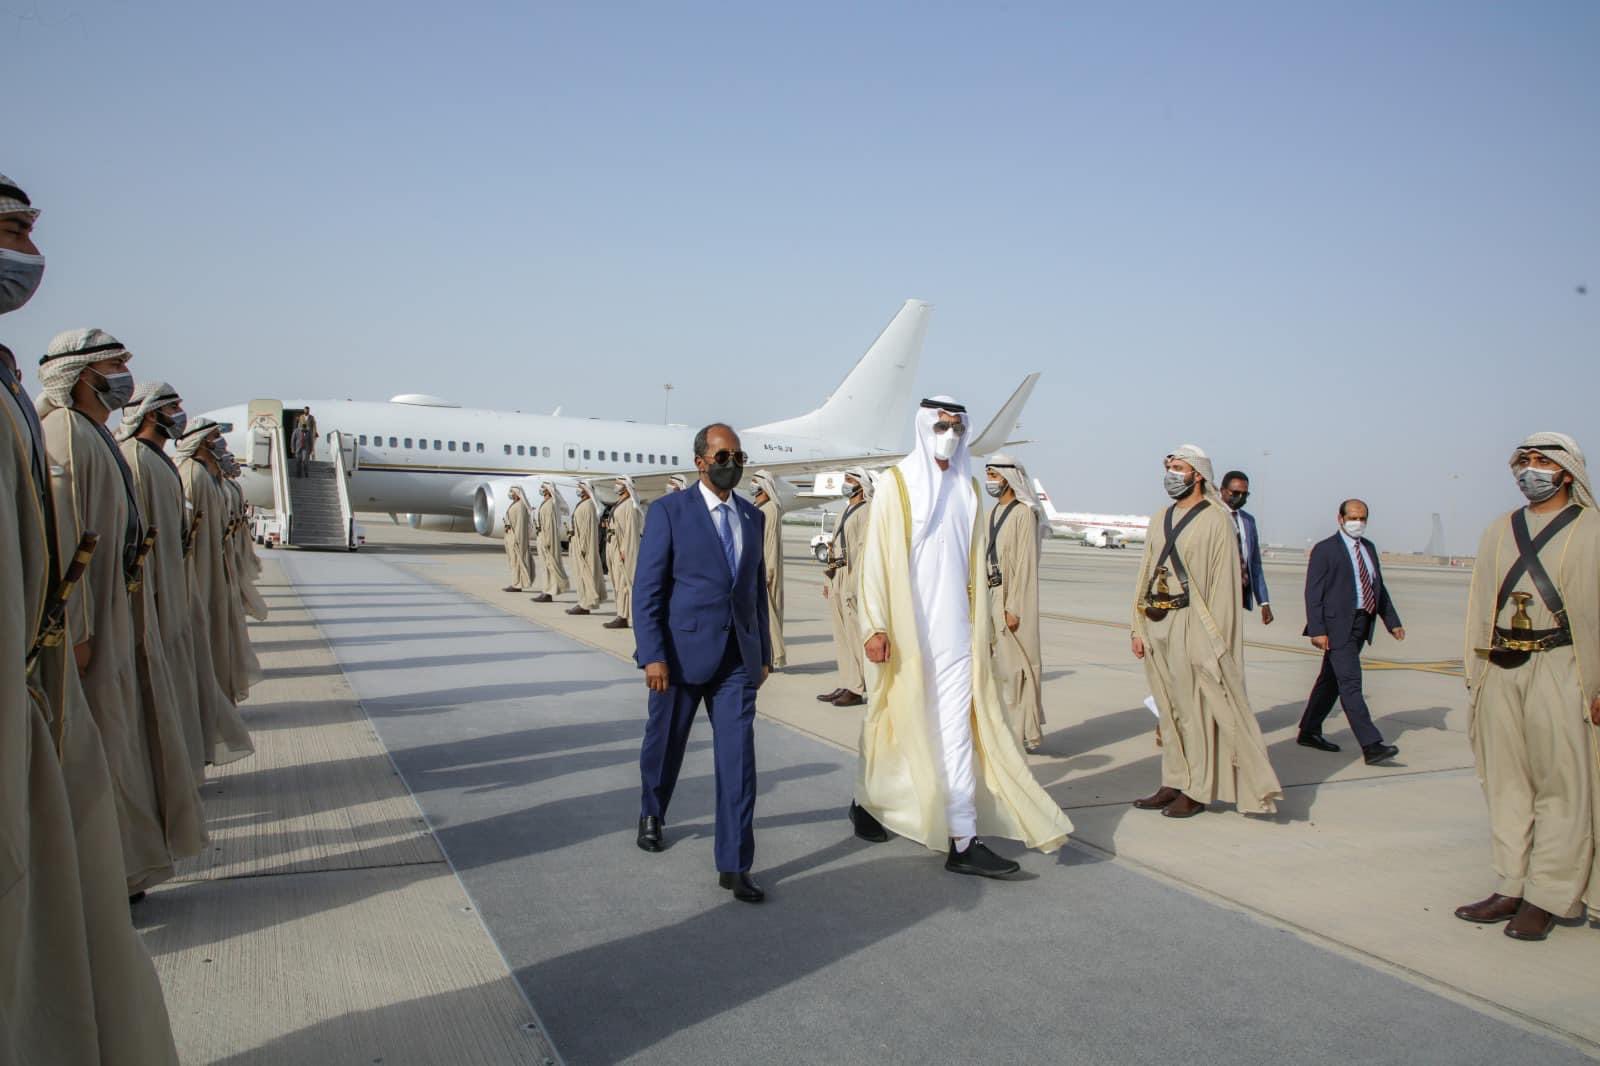 , ماذا يعني اختيار الرئيس الصومالي لدولة الإمارات لتكون وجهته الأولى ومادلالات هذه الزيارة؟